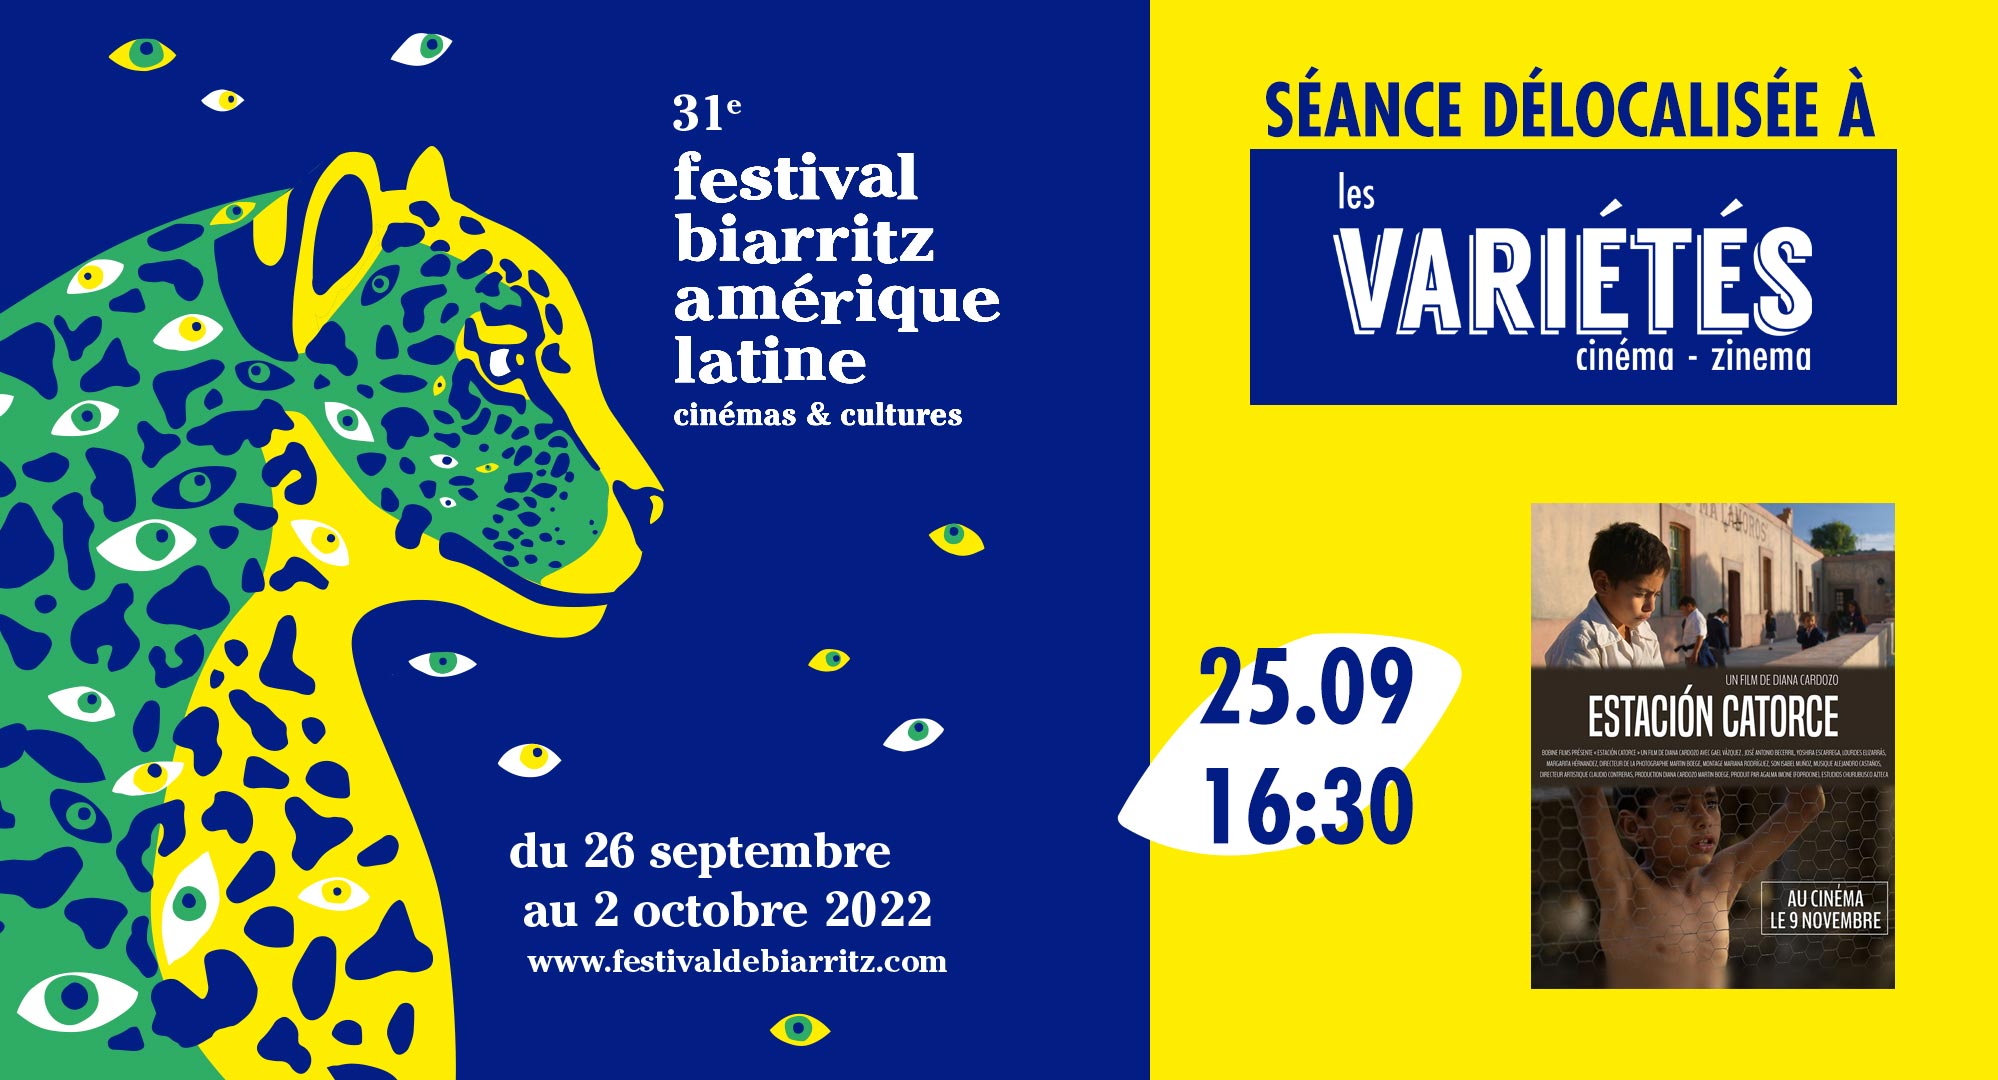 Bandeau séance délocalisée Biarritz Amérique latine